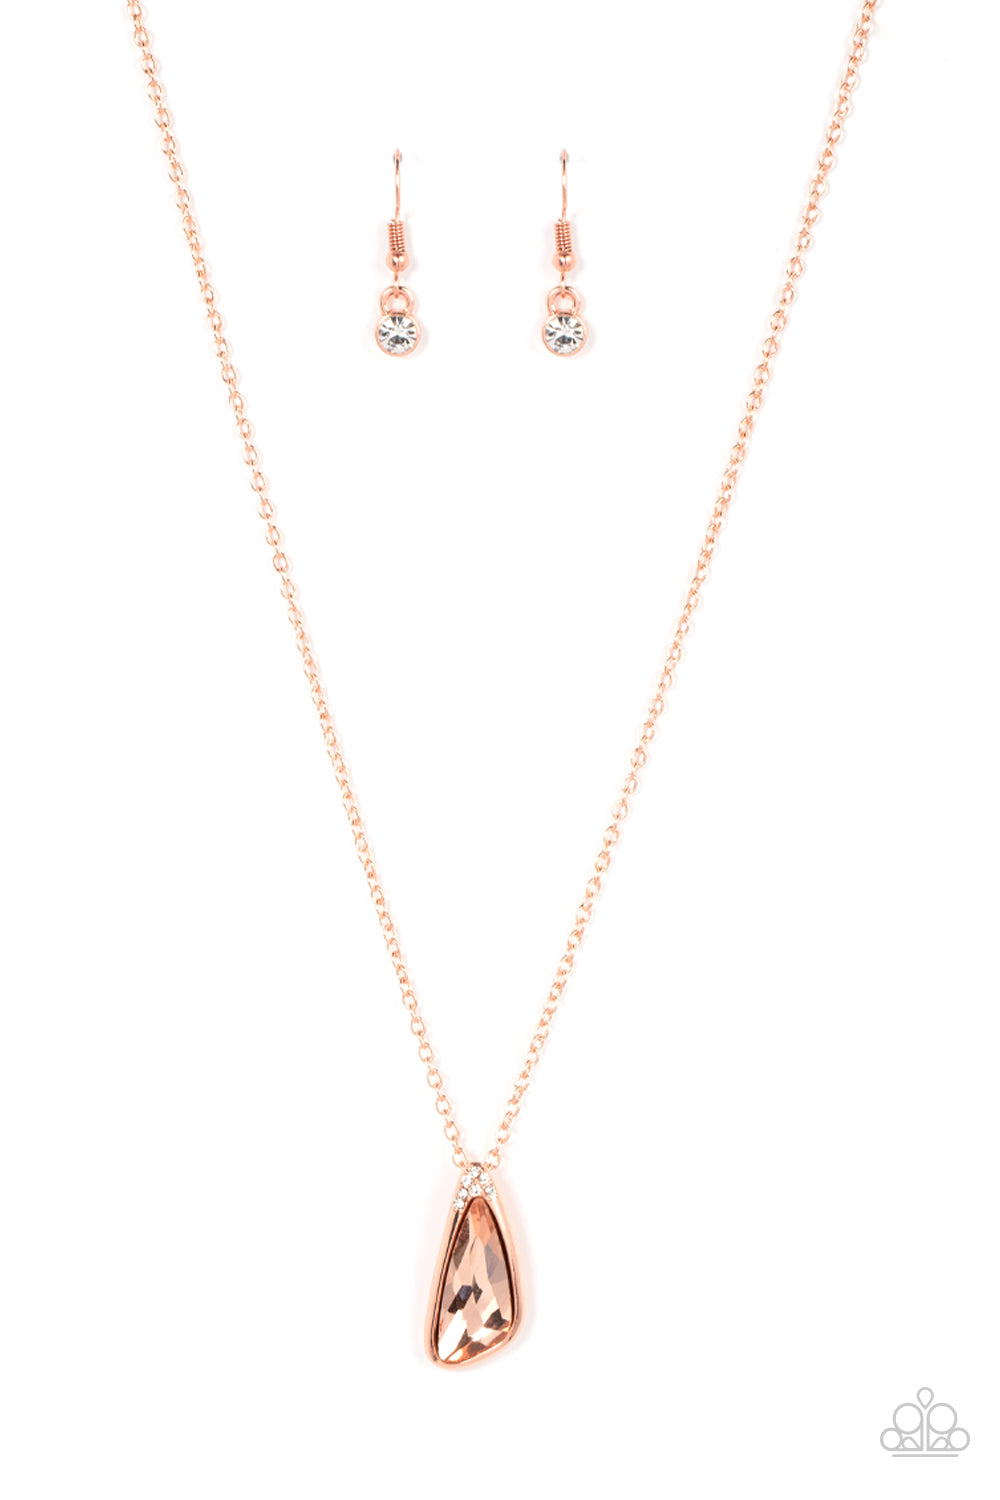 Paparazzi Envious Extravagance - Copper Necklace